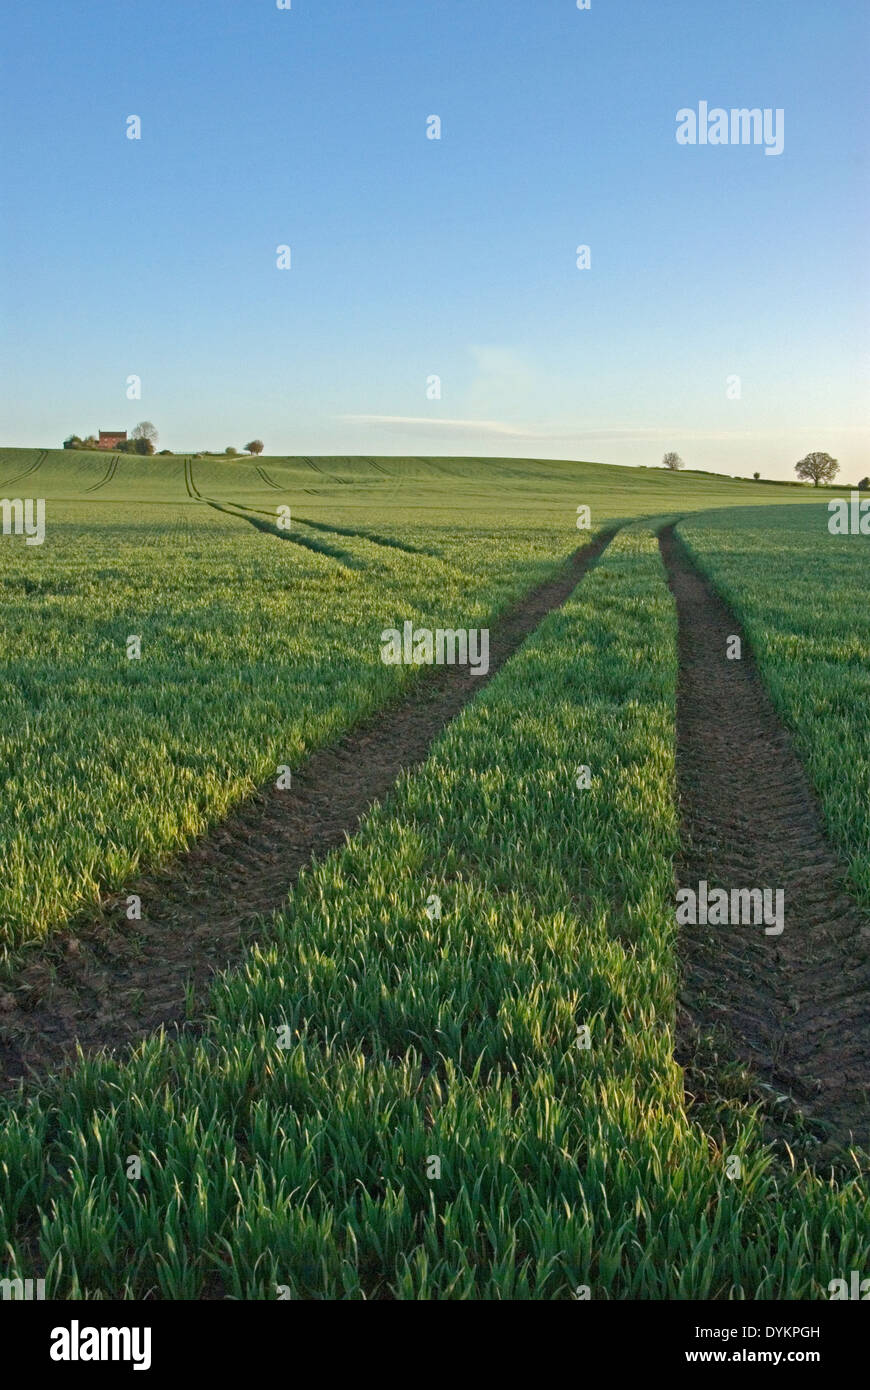 El paisaje agrícola en la zona rural de Warwickshire, con cosechas que crecen en los campos. Foto de stock